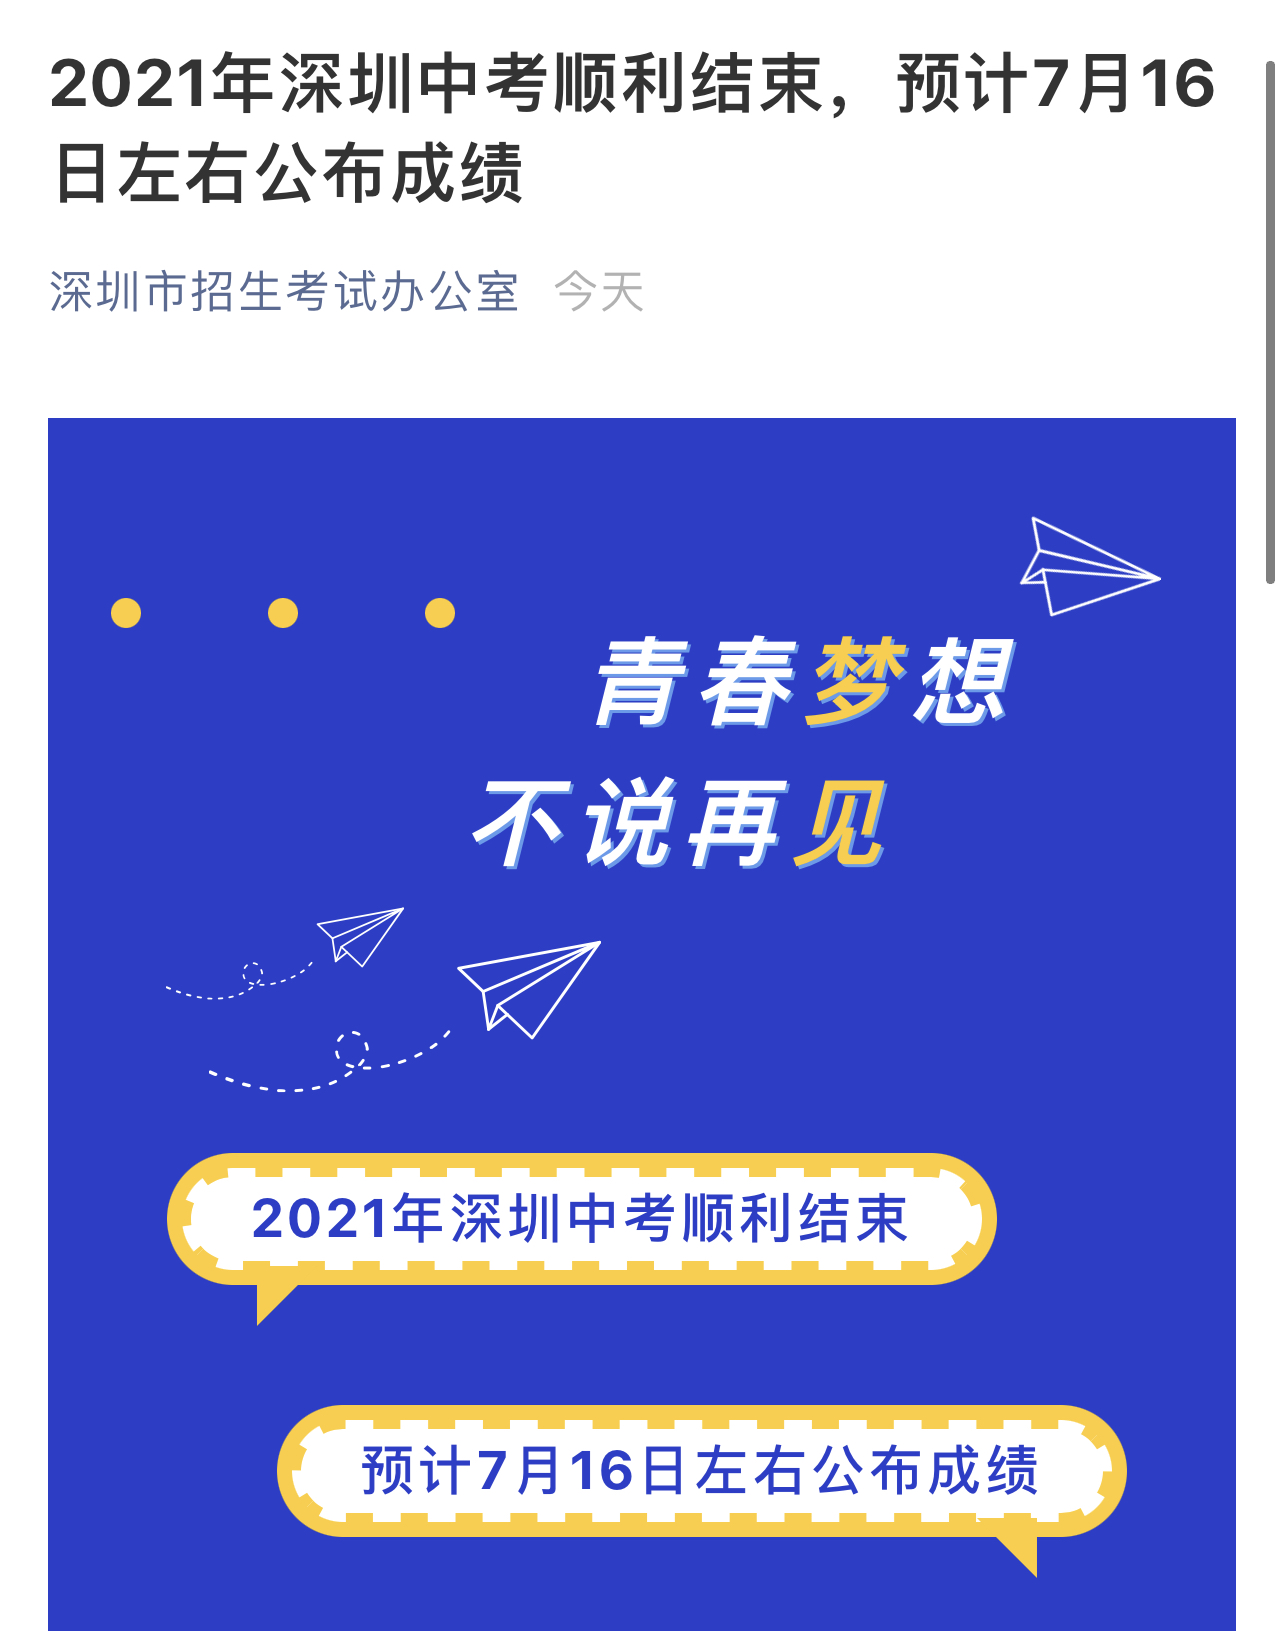 2021年深圳中考顺利结束，预计7月16日左右公布成绩